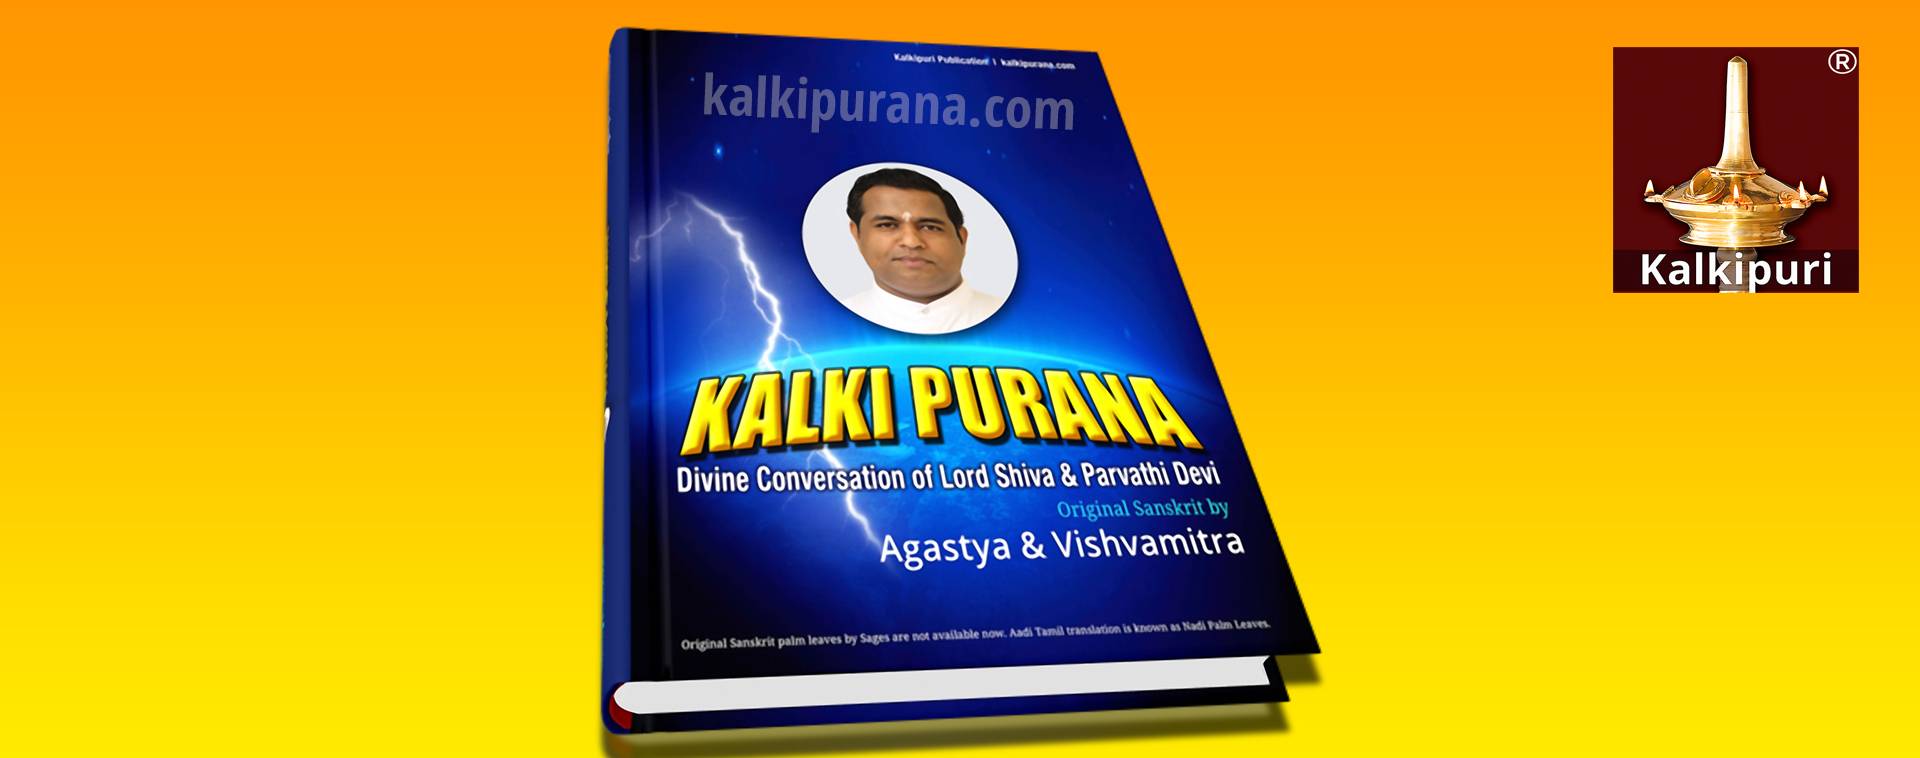 Kalki Purana Book by Agastya and Vishvamitra 1920x550 px